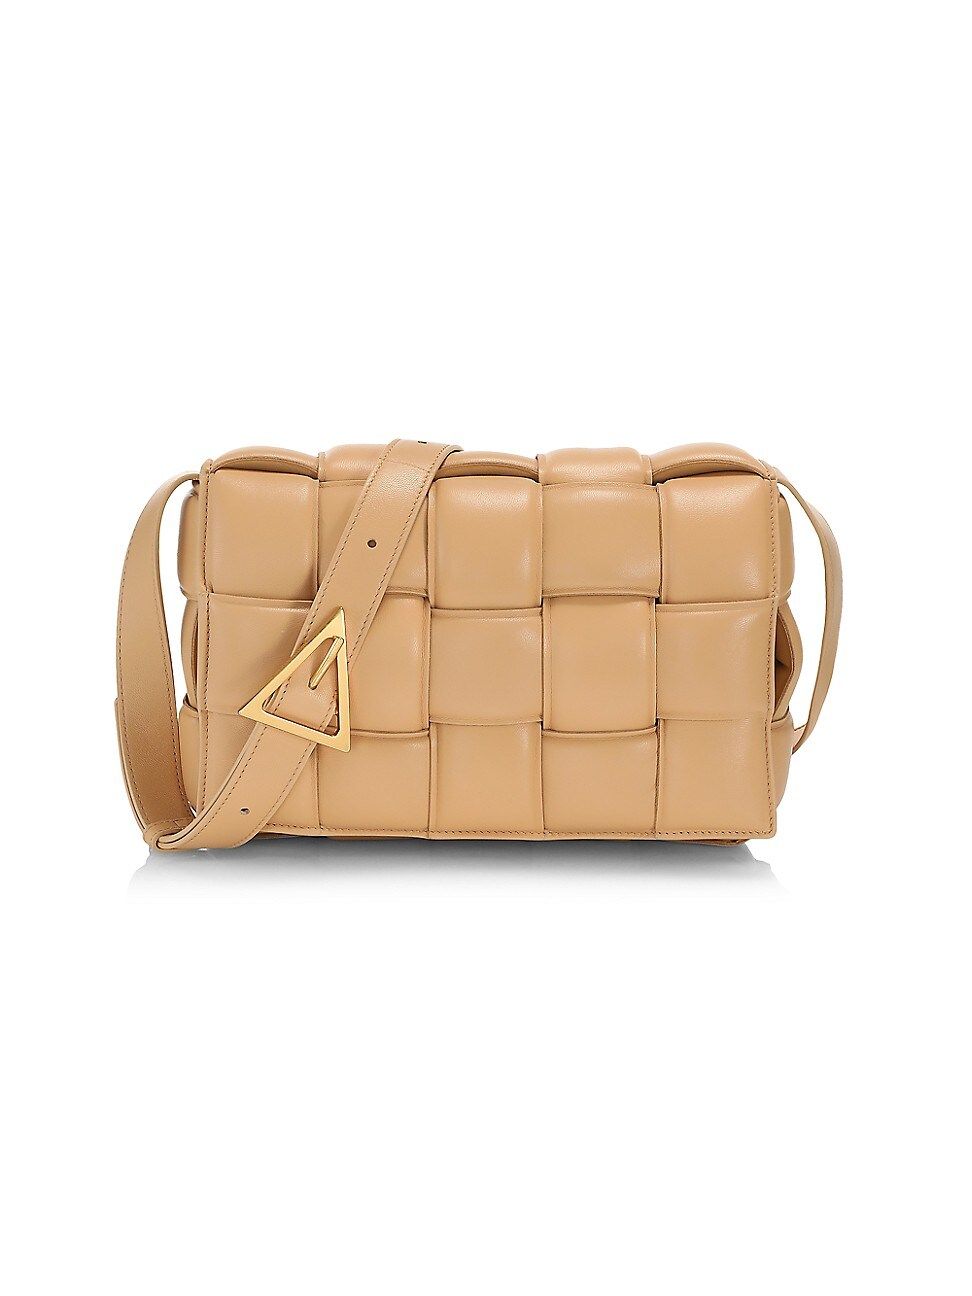 Bottega Veneta Women's The Cassette Padded Leather Crossbody Bag - Almond | Saks Fifth Avenue